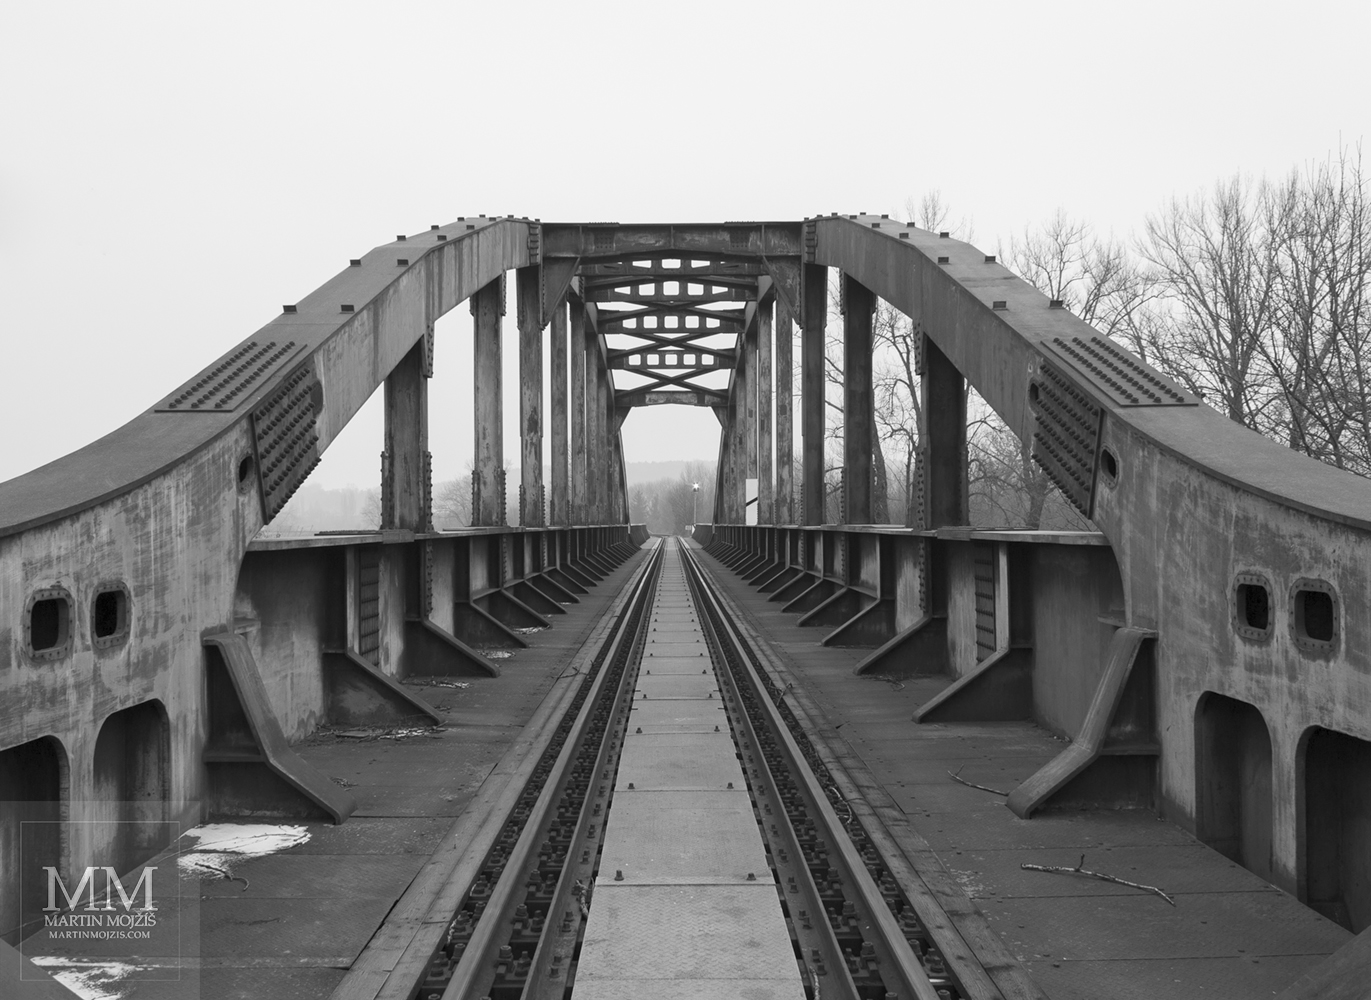 Oblouky konstrukce ocelového železničního mostu. Umělecká černobílá fotografie Martina Mojžíše s názvem K OBZORU.